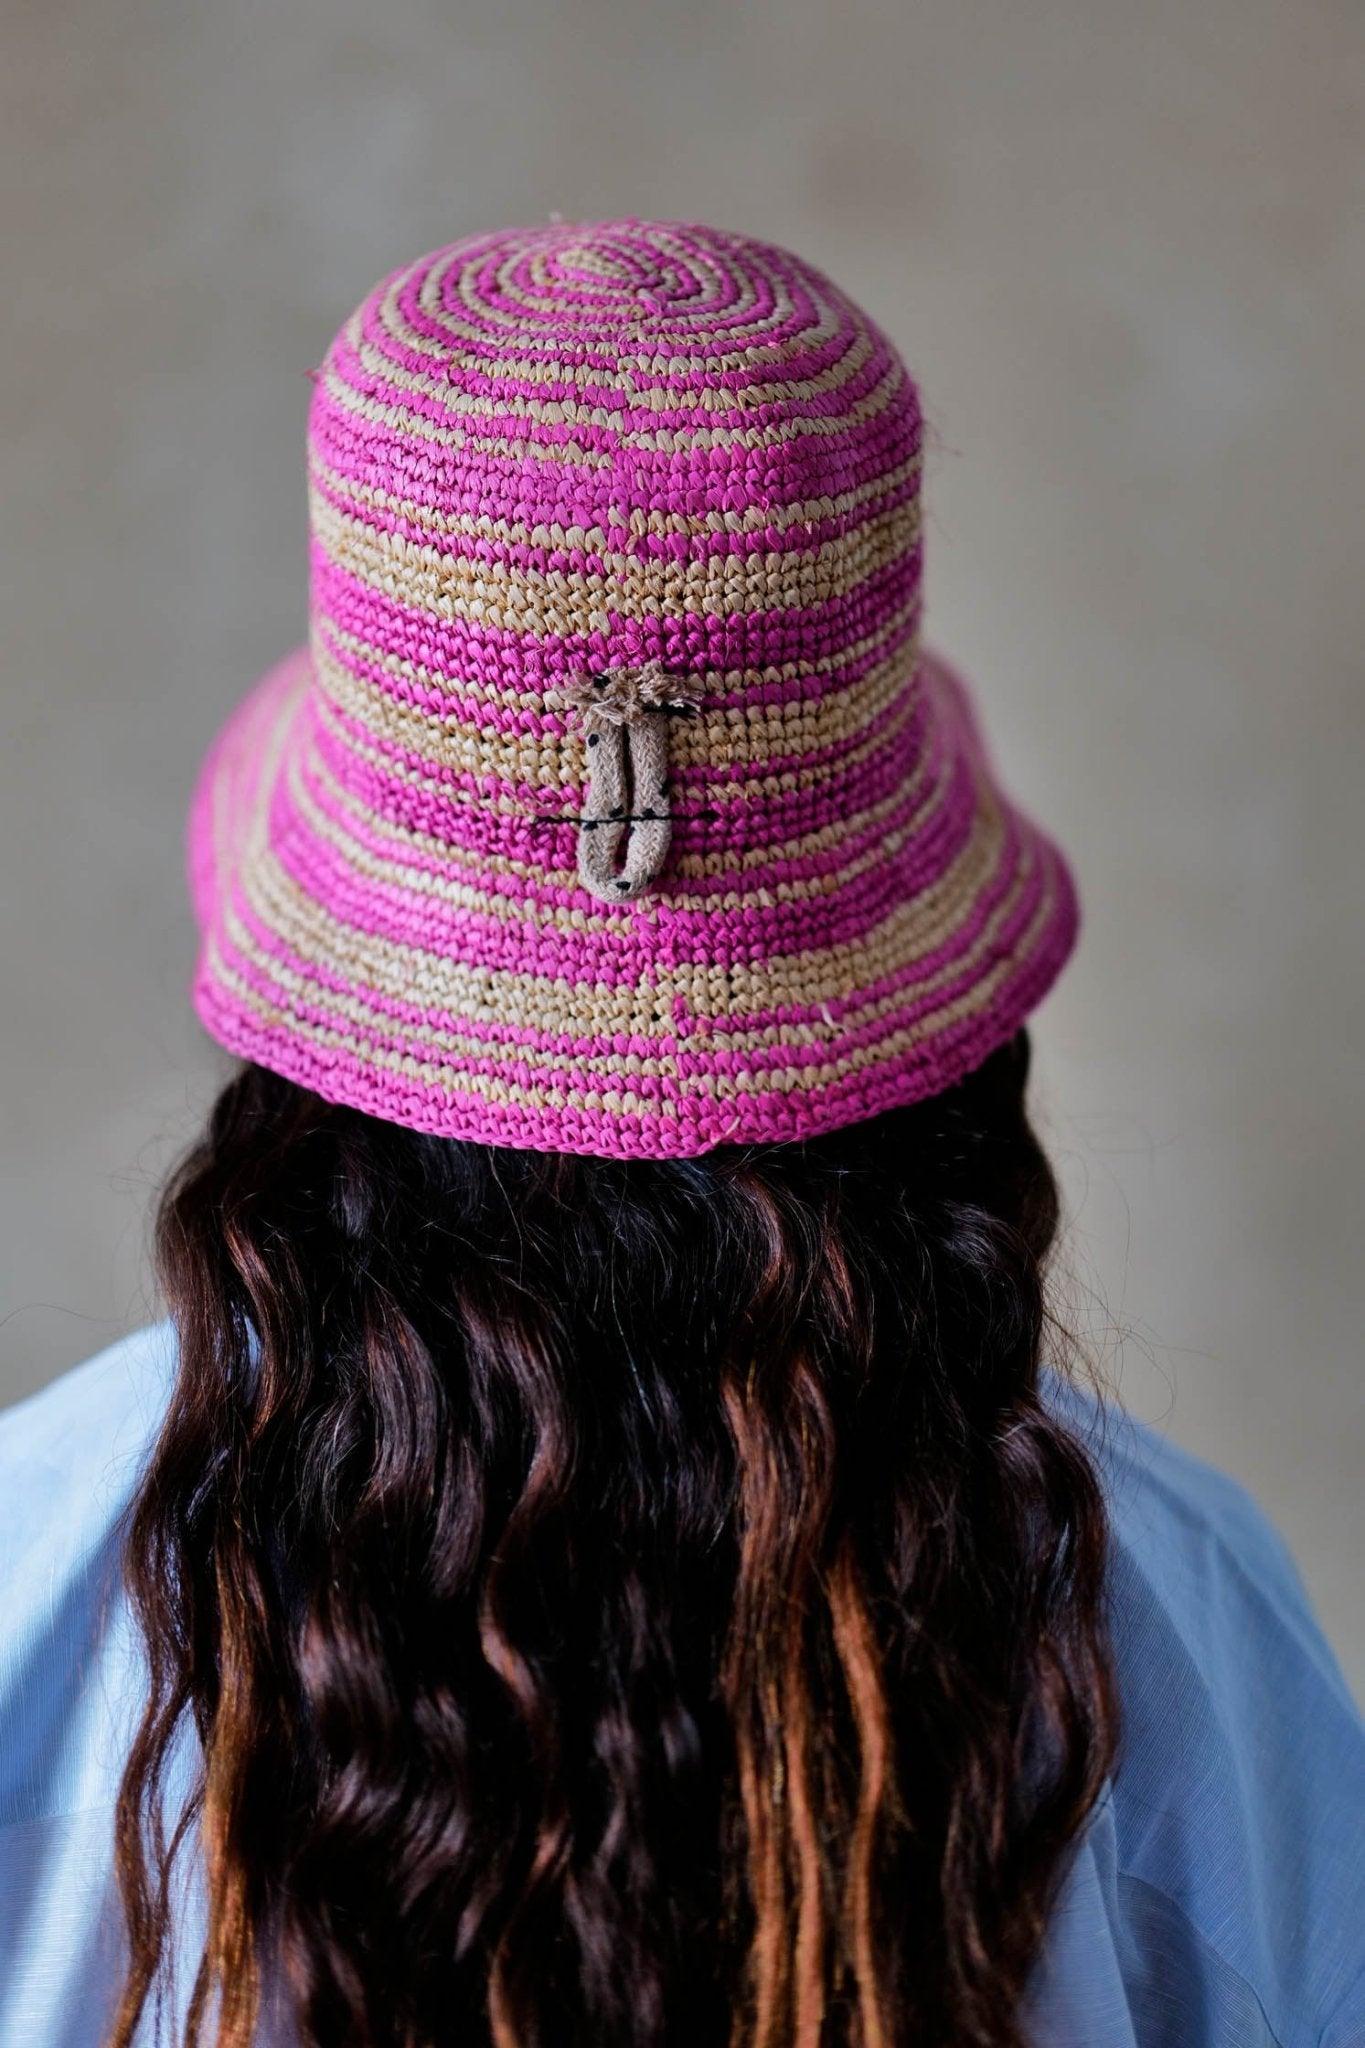 
                  
                    Shack Rafia Crochet Pink - SUPERDUPER
                  
                